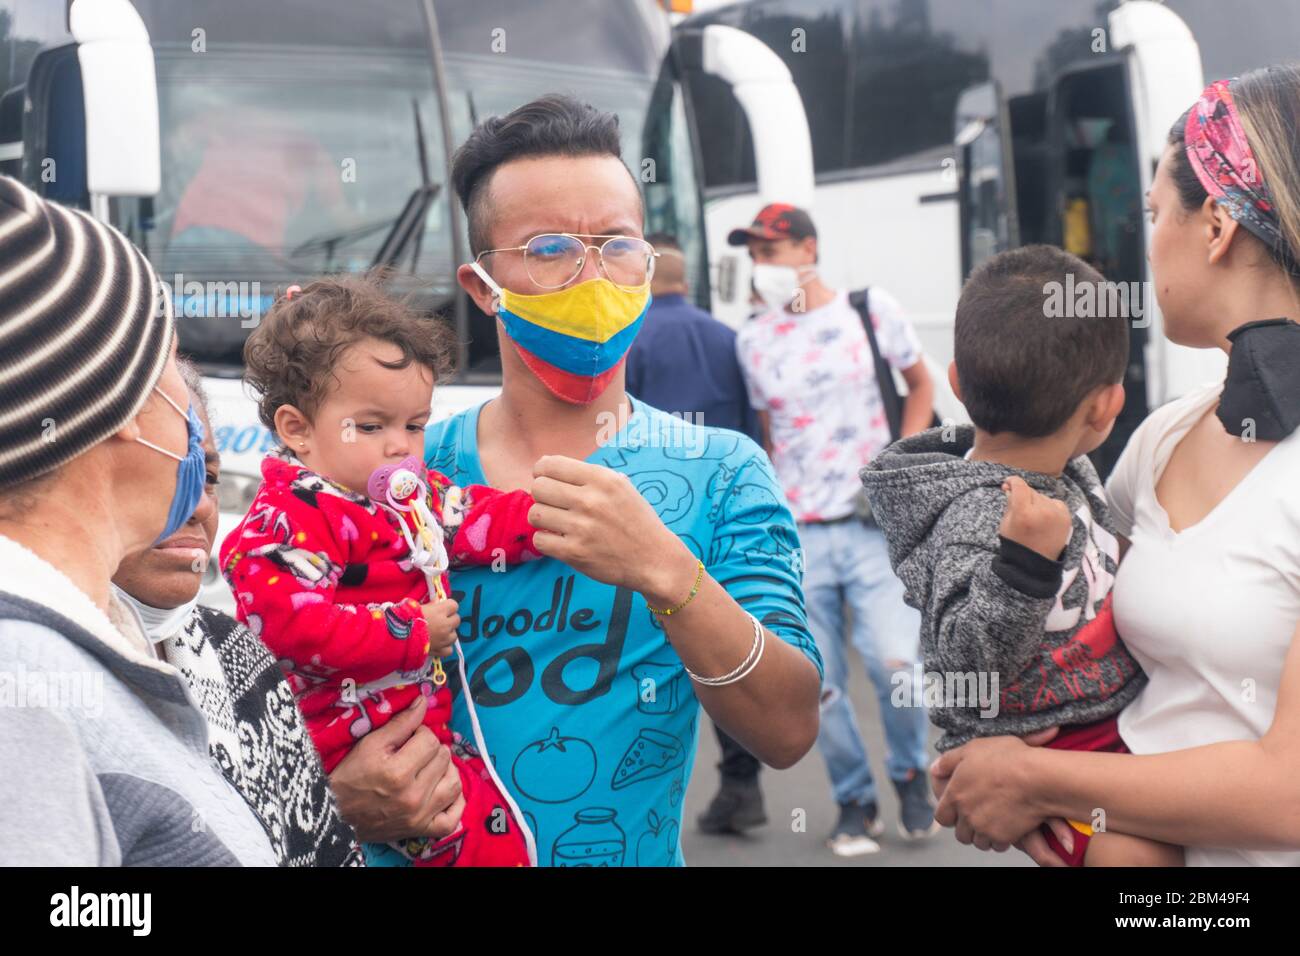 Les immigrants dans la rue avec des valises attendant de retourner dans leur pays, le Venezuela, en raison de la propagation du virus corona pandémique, COVID-19 Banque D'Images